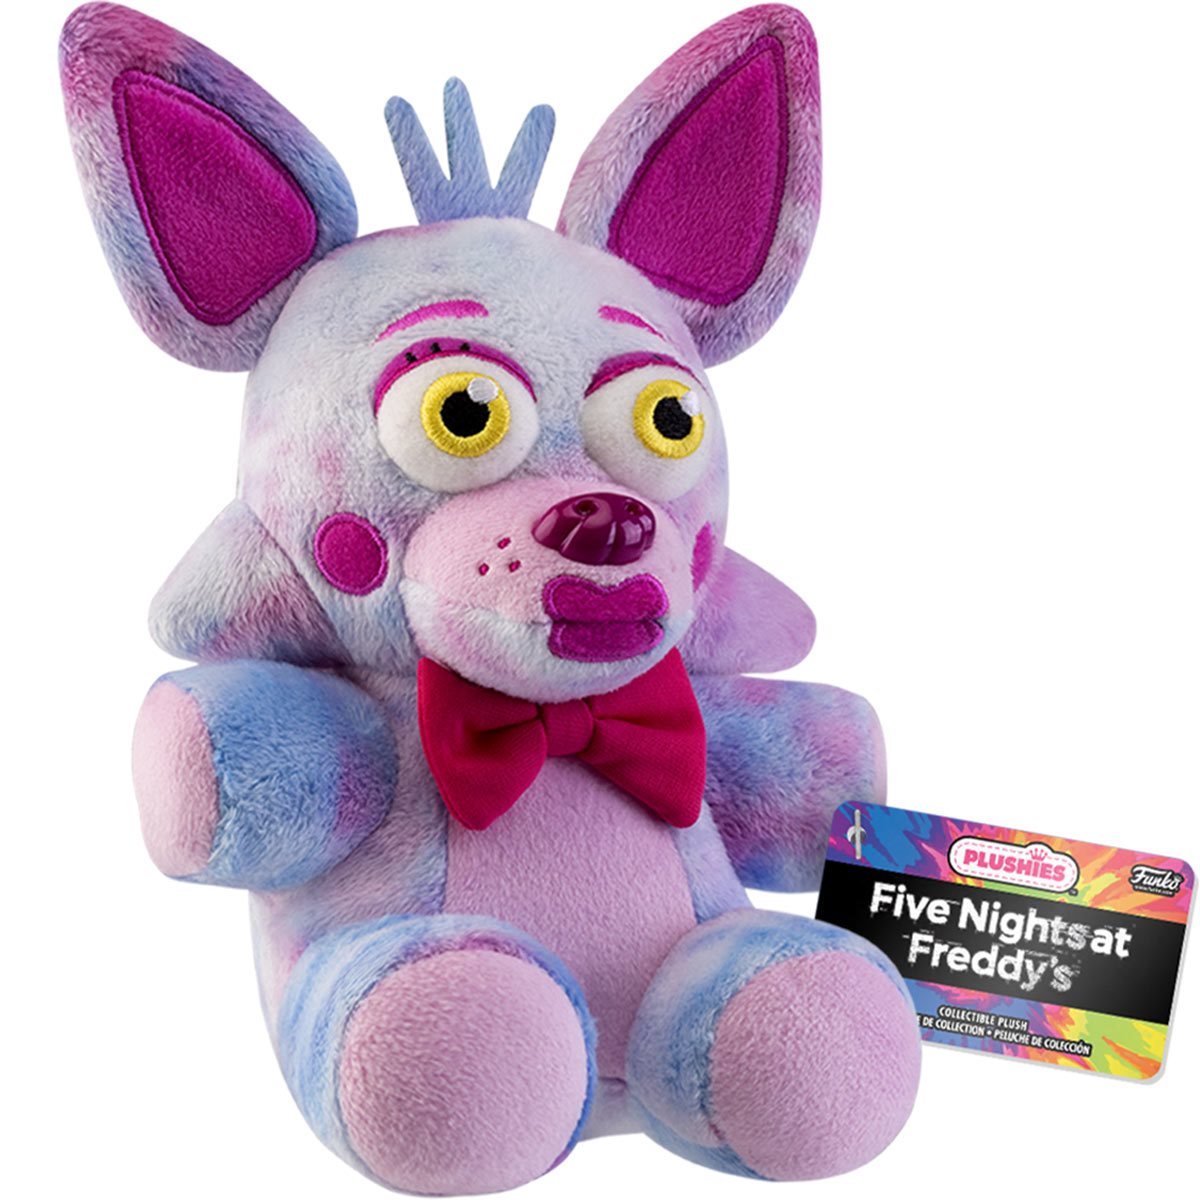 Funko Plushies Five Nights at Freddy's Tie Dye Bonnie FNAF Plush Stuffed  Toy